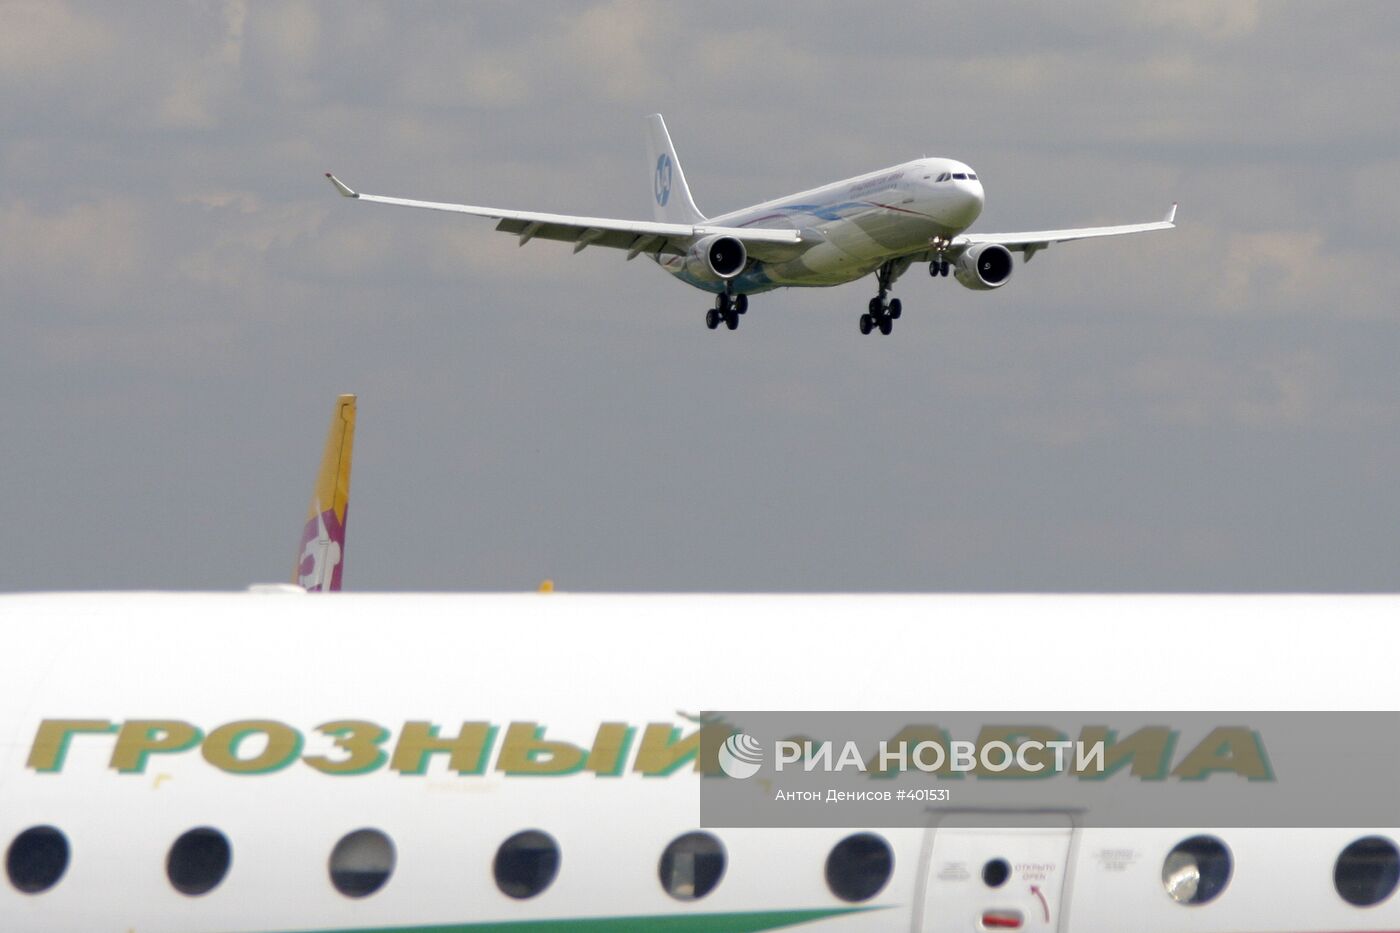 Презентация самолета Airbus А330-300 ОАО "Владивосток Авиа"